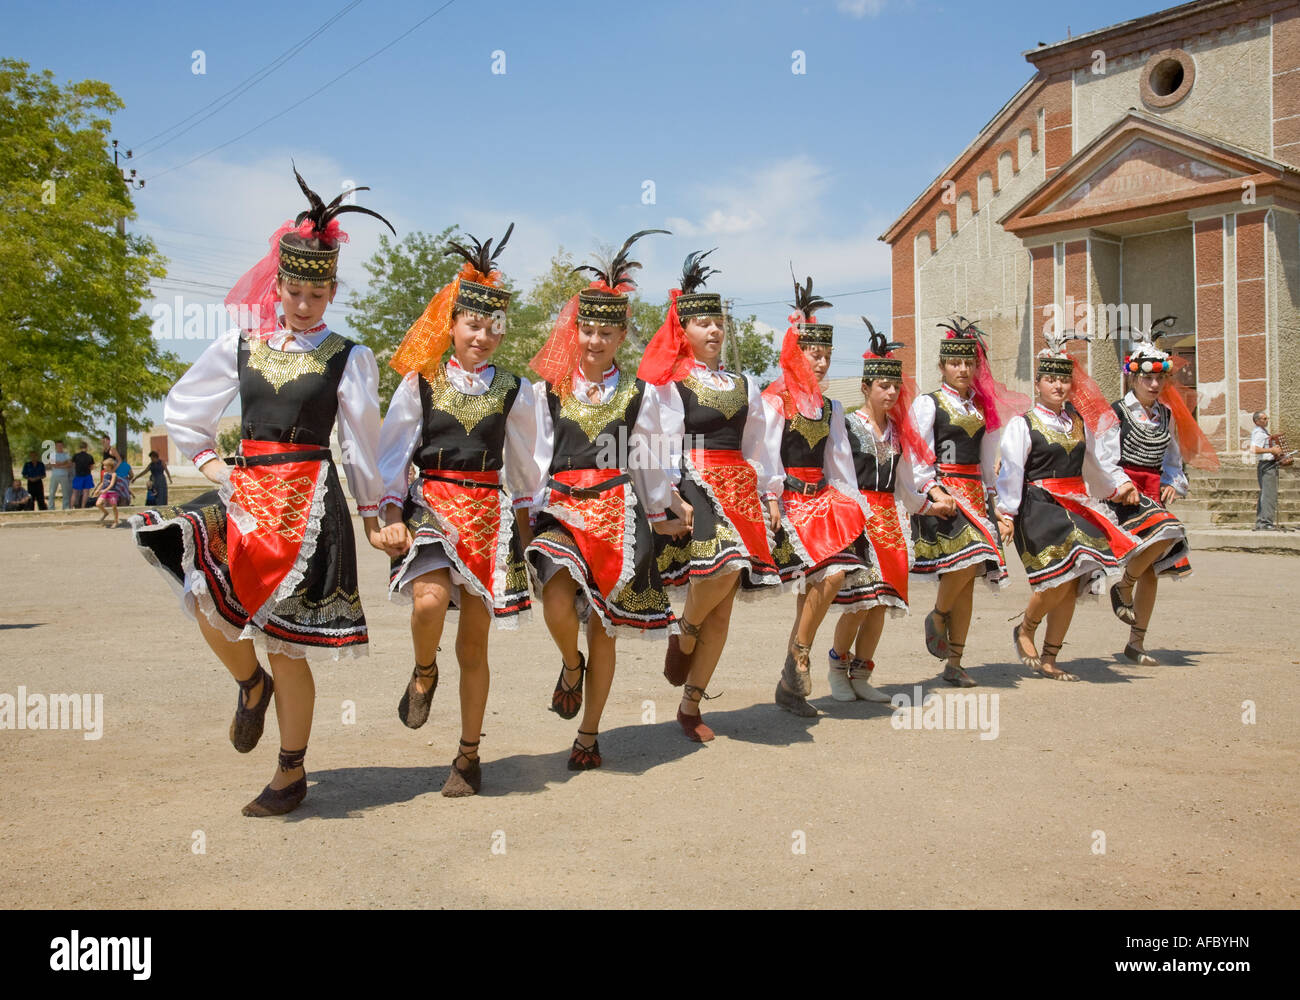 Le giovani ragazze nei tradizionali costumi ucraino dancing di fronte alla casa di città in Plotzk / Ucraina Foto Stock